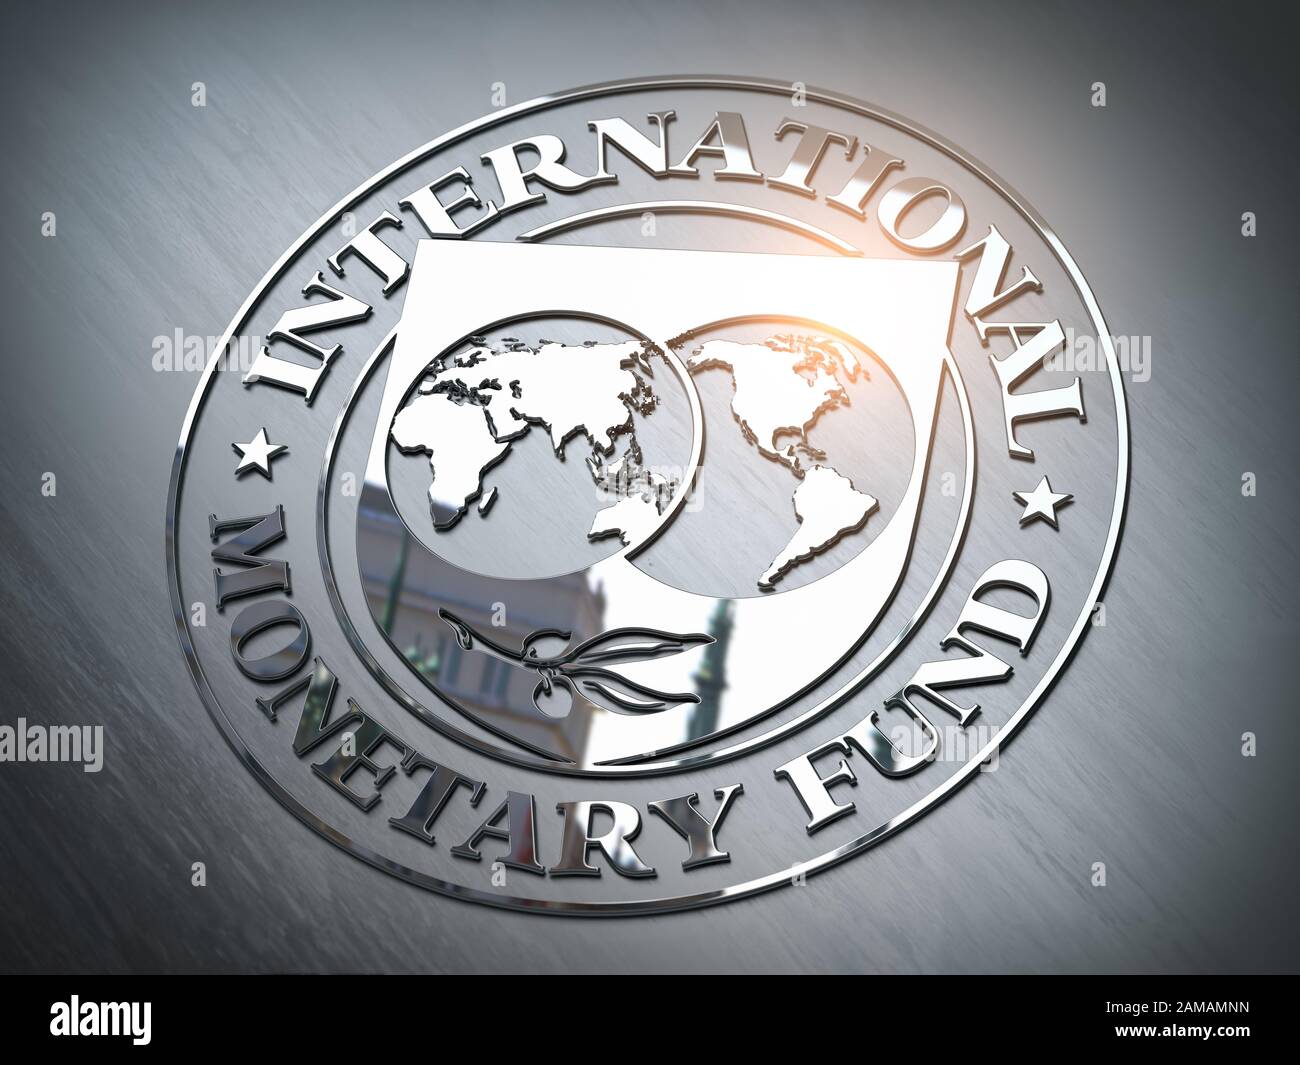 Fmi Fonds Monétaire International d'un symbole ou signe. 3d illustration Banque D'Images